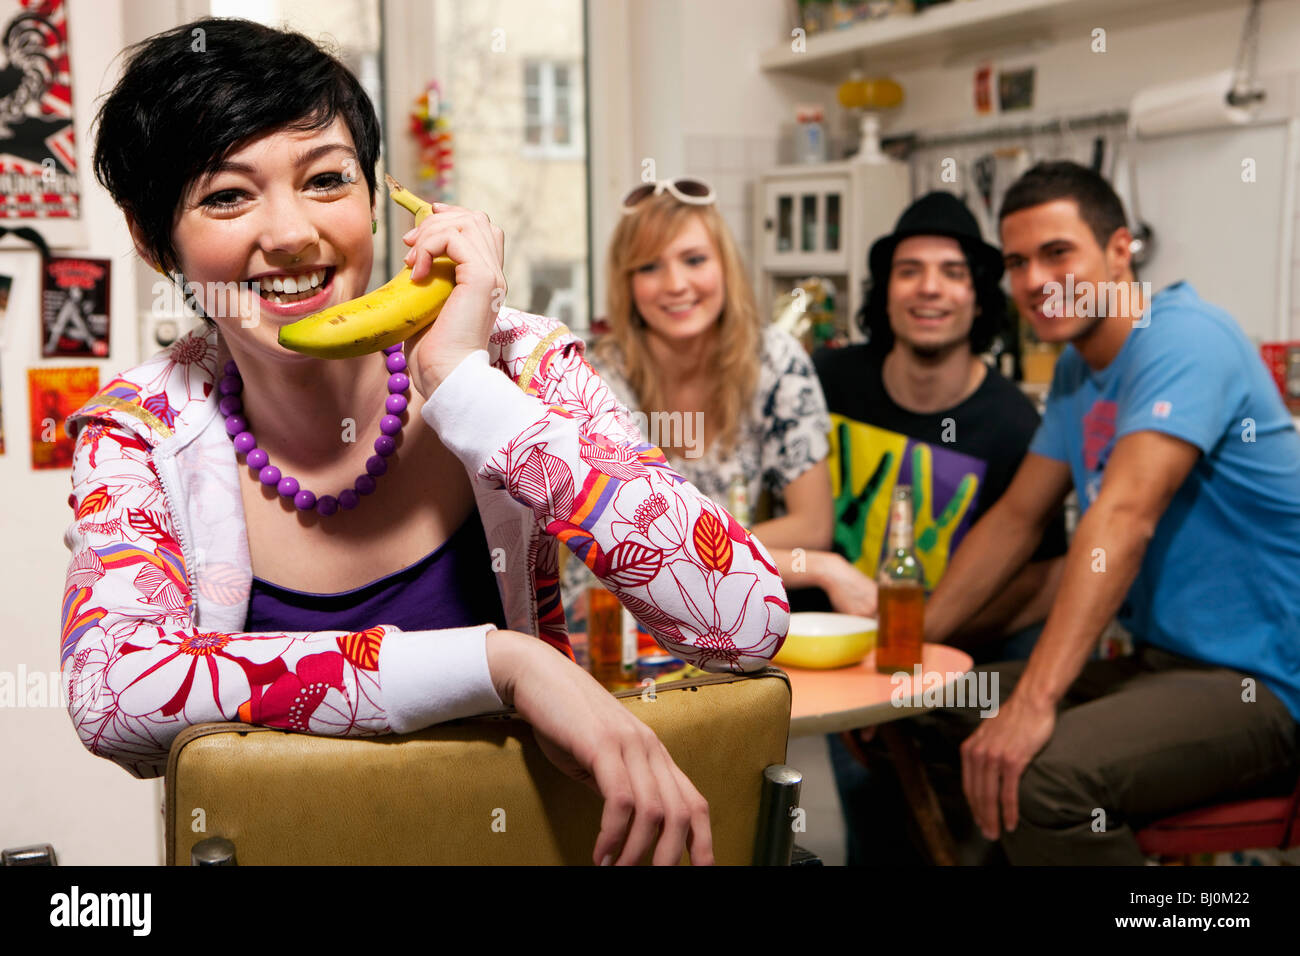 Ritratto di ragazza adolescente con amici in cucina con banana come telefono Foto Stock